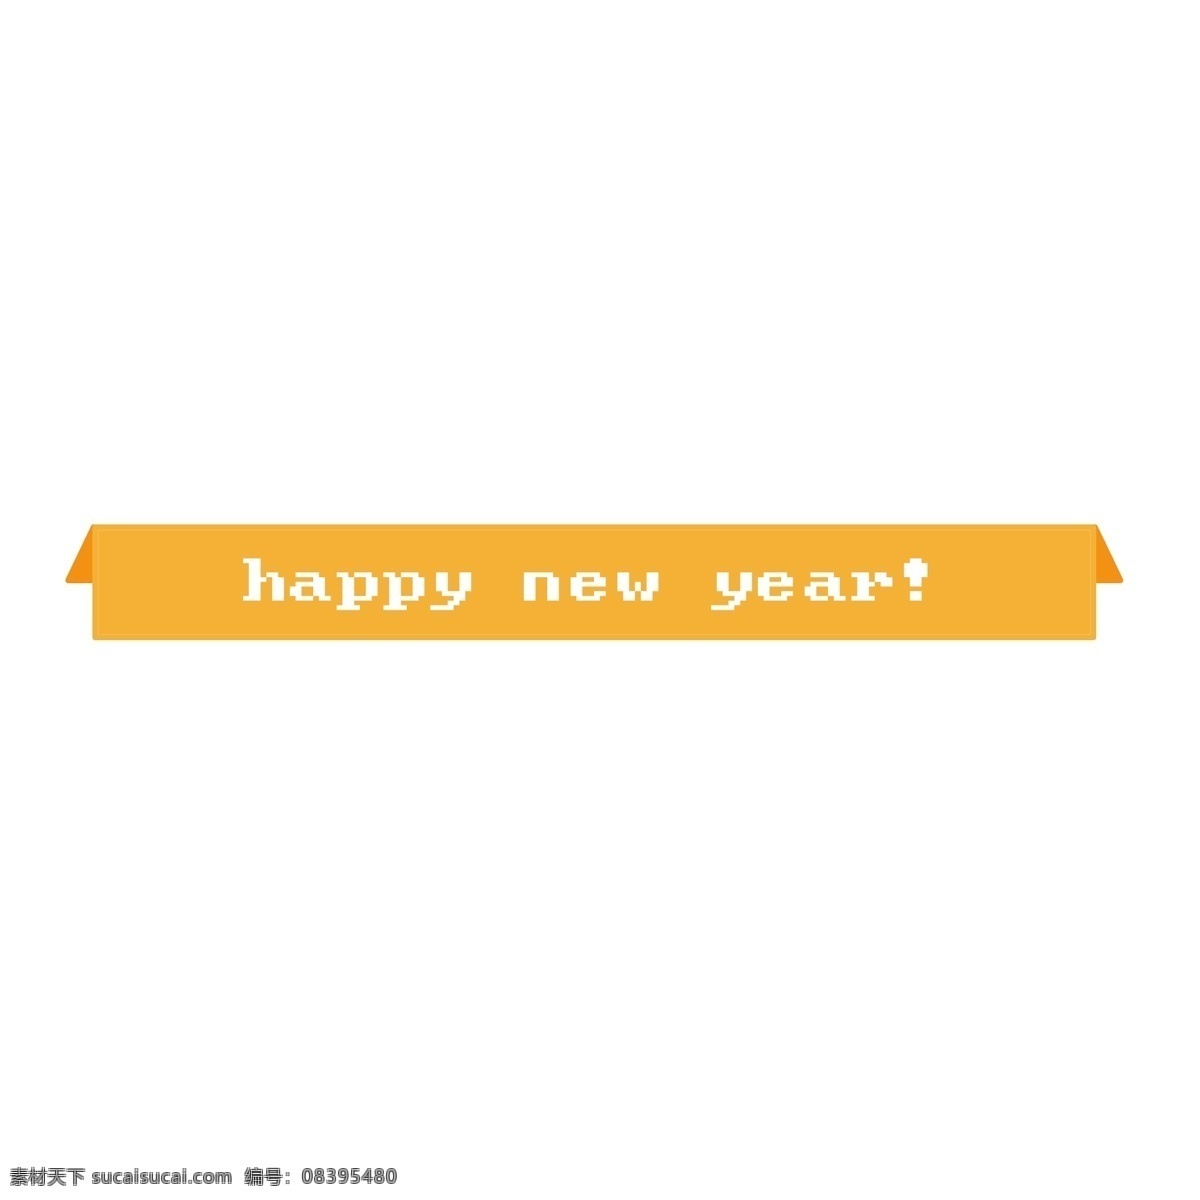 黄色 折纸 风格 标题 框 折纸风格 新年快乐 标题框 标题栏 电商 优惠 打折 促销 标签免费下载 psd分层